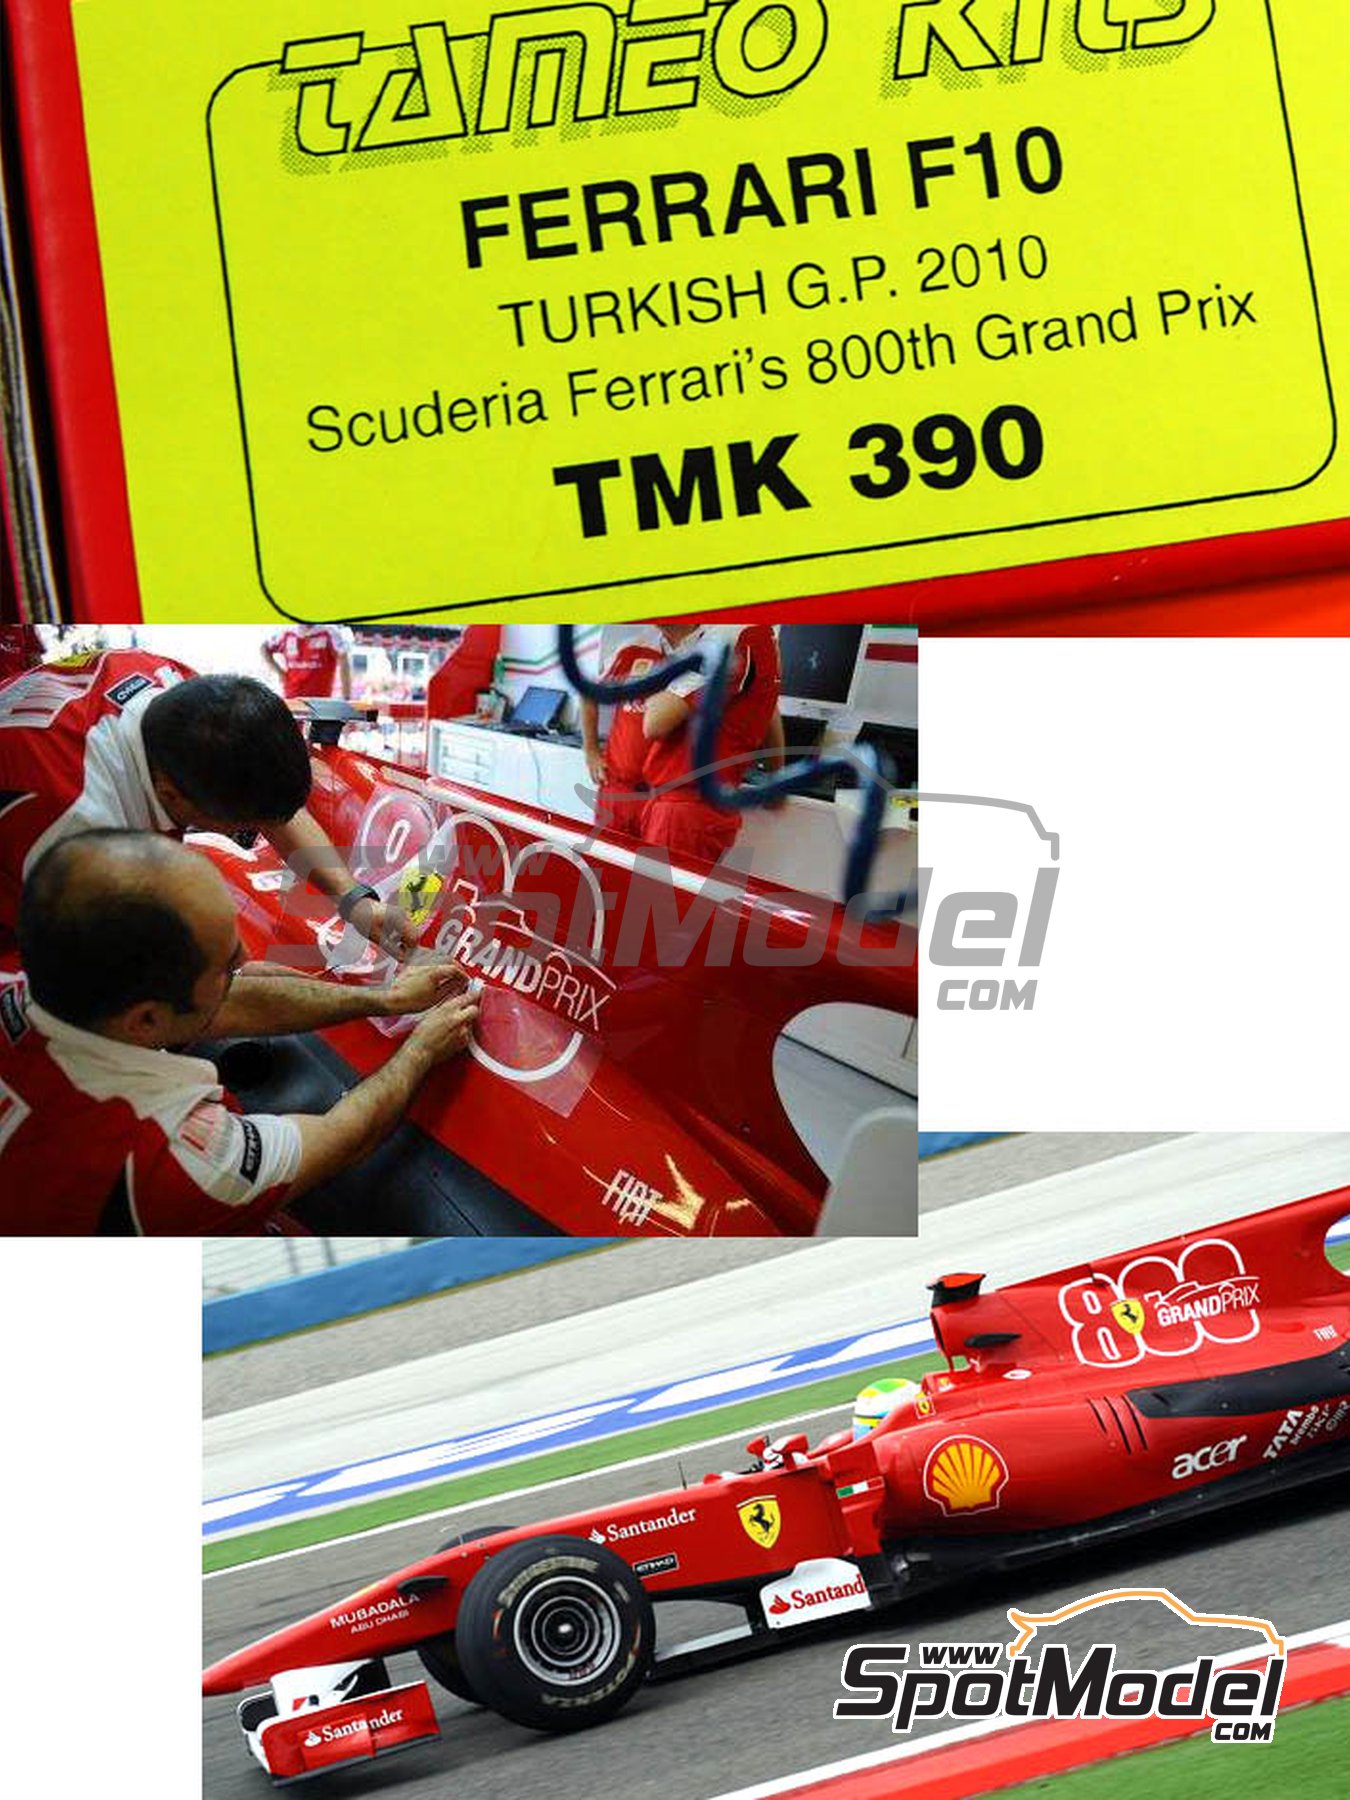 Fujimi model 1/20 Grand Prix series No.57 Ferrari F10 Italy GP